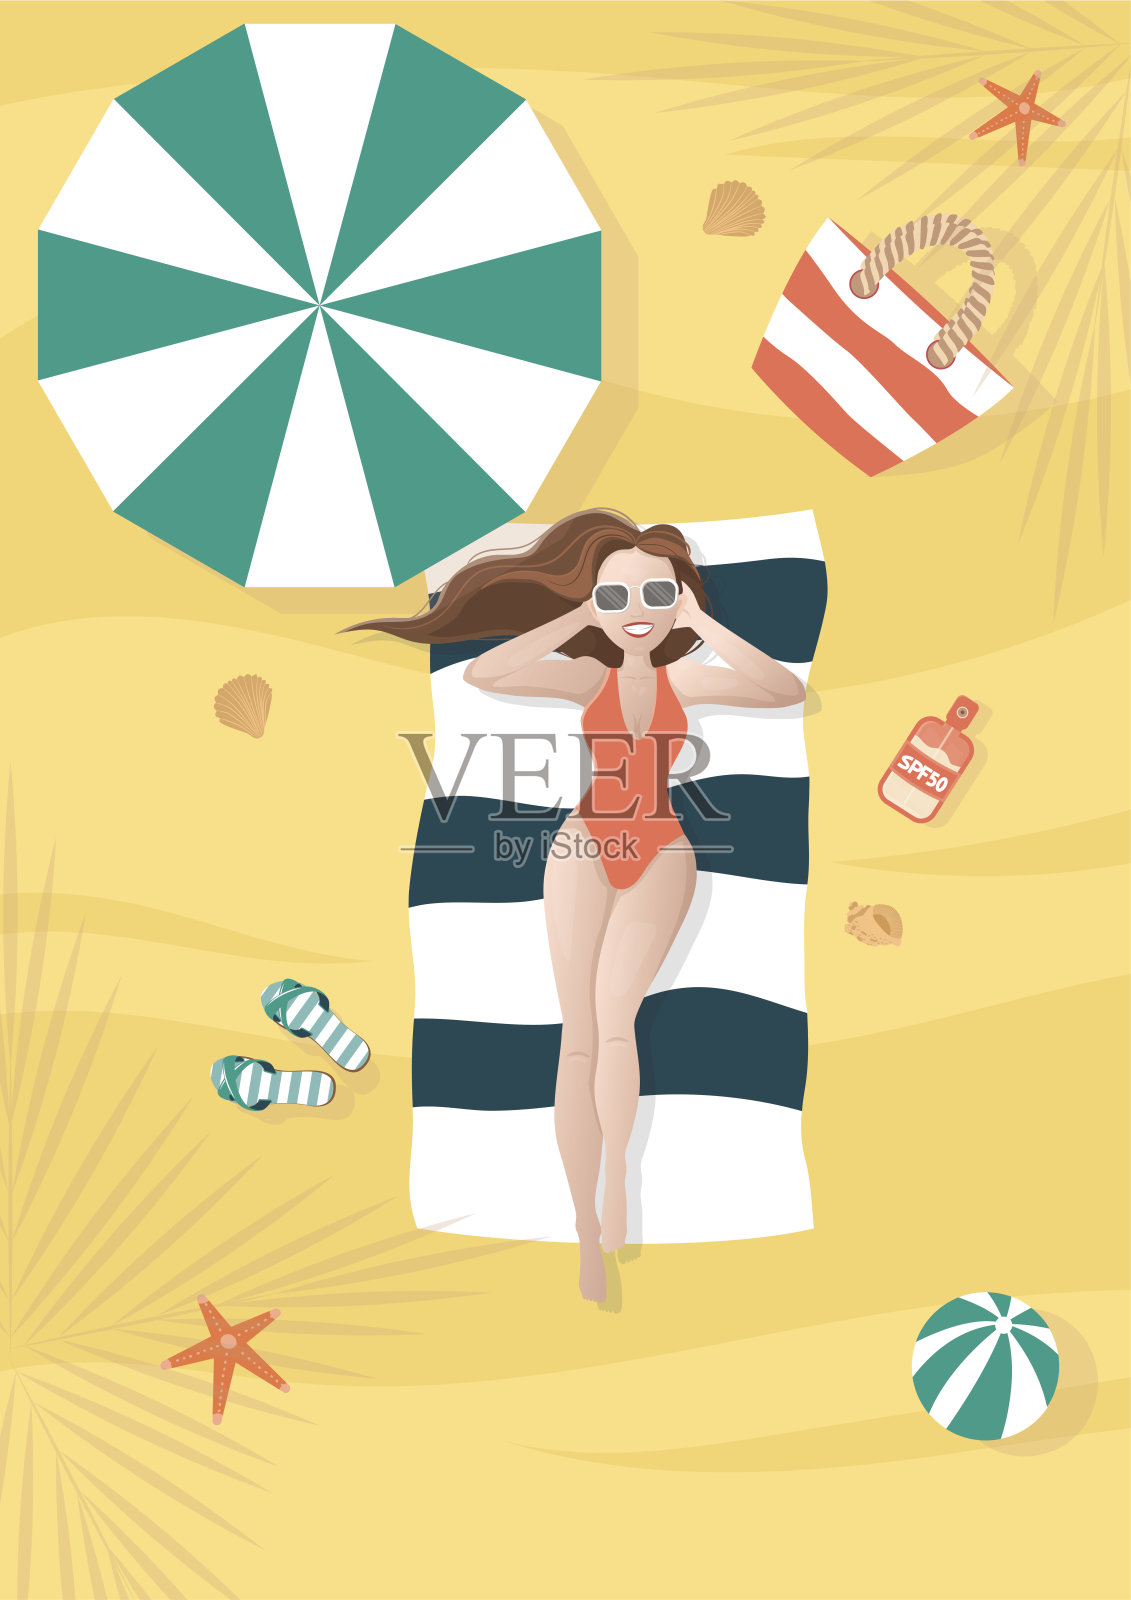 戴墨镜的女孩在沙滩上晒太阳，伞下有球，包，防晒霜，贝壳，海星。插画图片素材